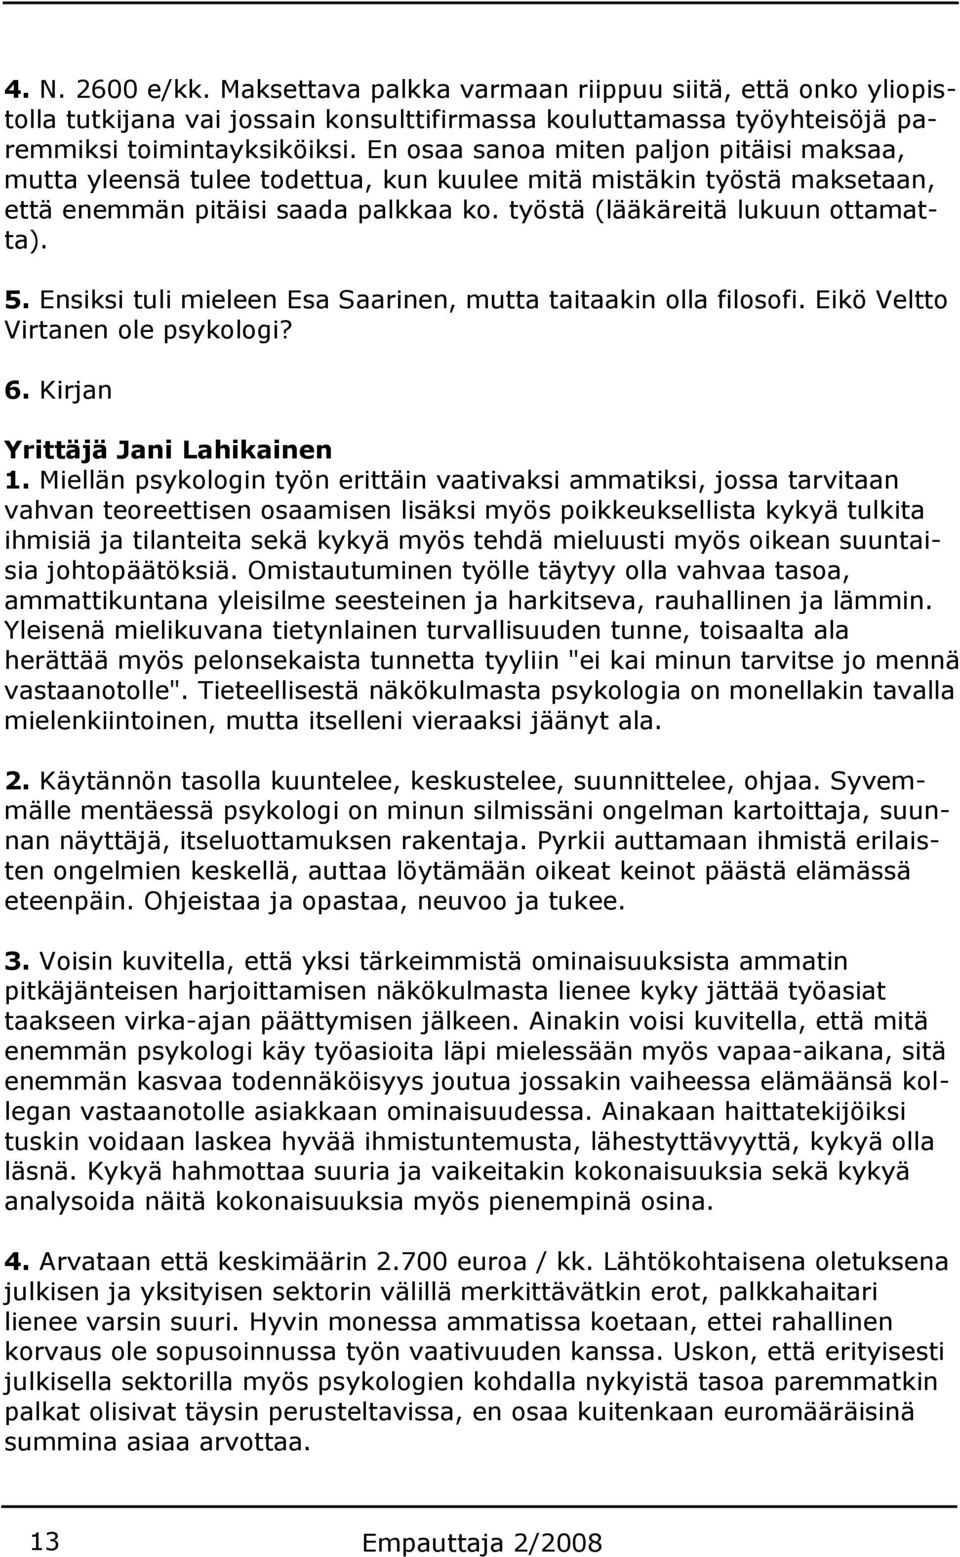 Ensiksi tuli mieleen Esa Saarinen, mutta taitaakin olla filosofi. Eikö Veltto Virtanen ole psykologi? 6. Kirjan Yrittäjä Jani Lahikainen 1.